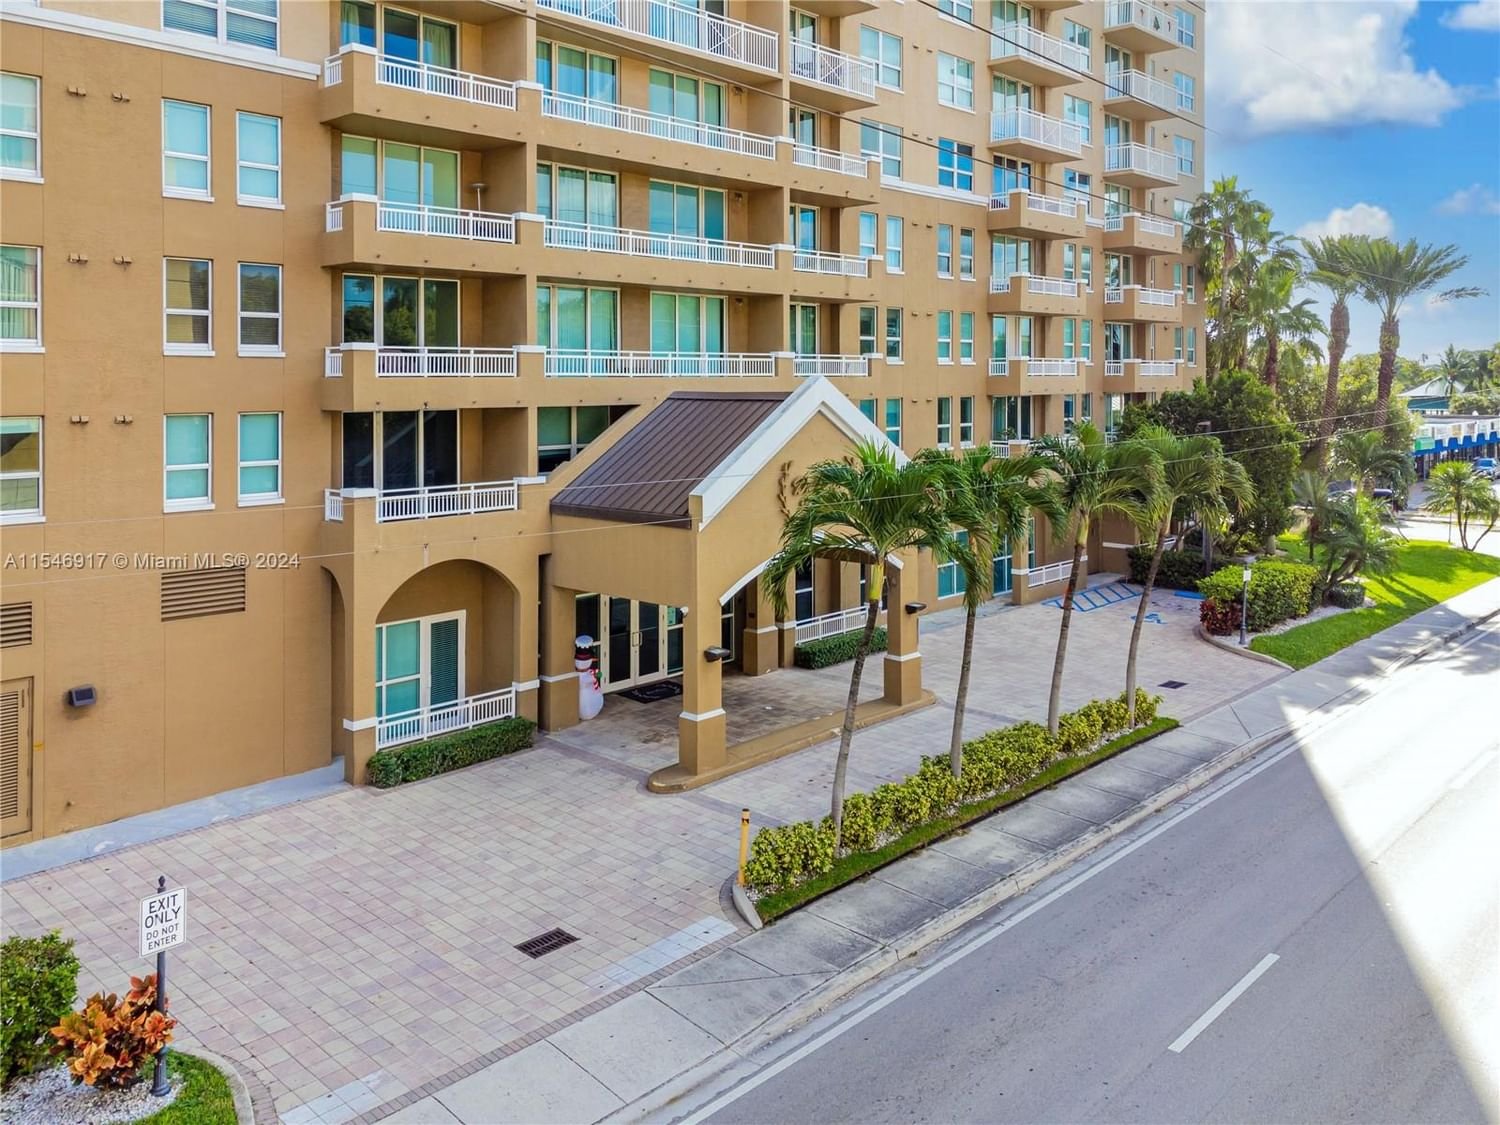 Real estate property located at 2665 37th Ave #906, Miami-Dade County, DA VINCI ON DOUGLAS CONDO, Miami, FL